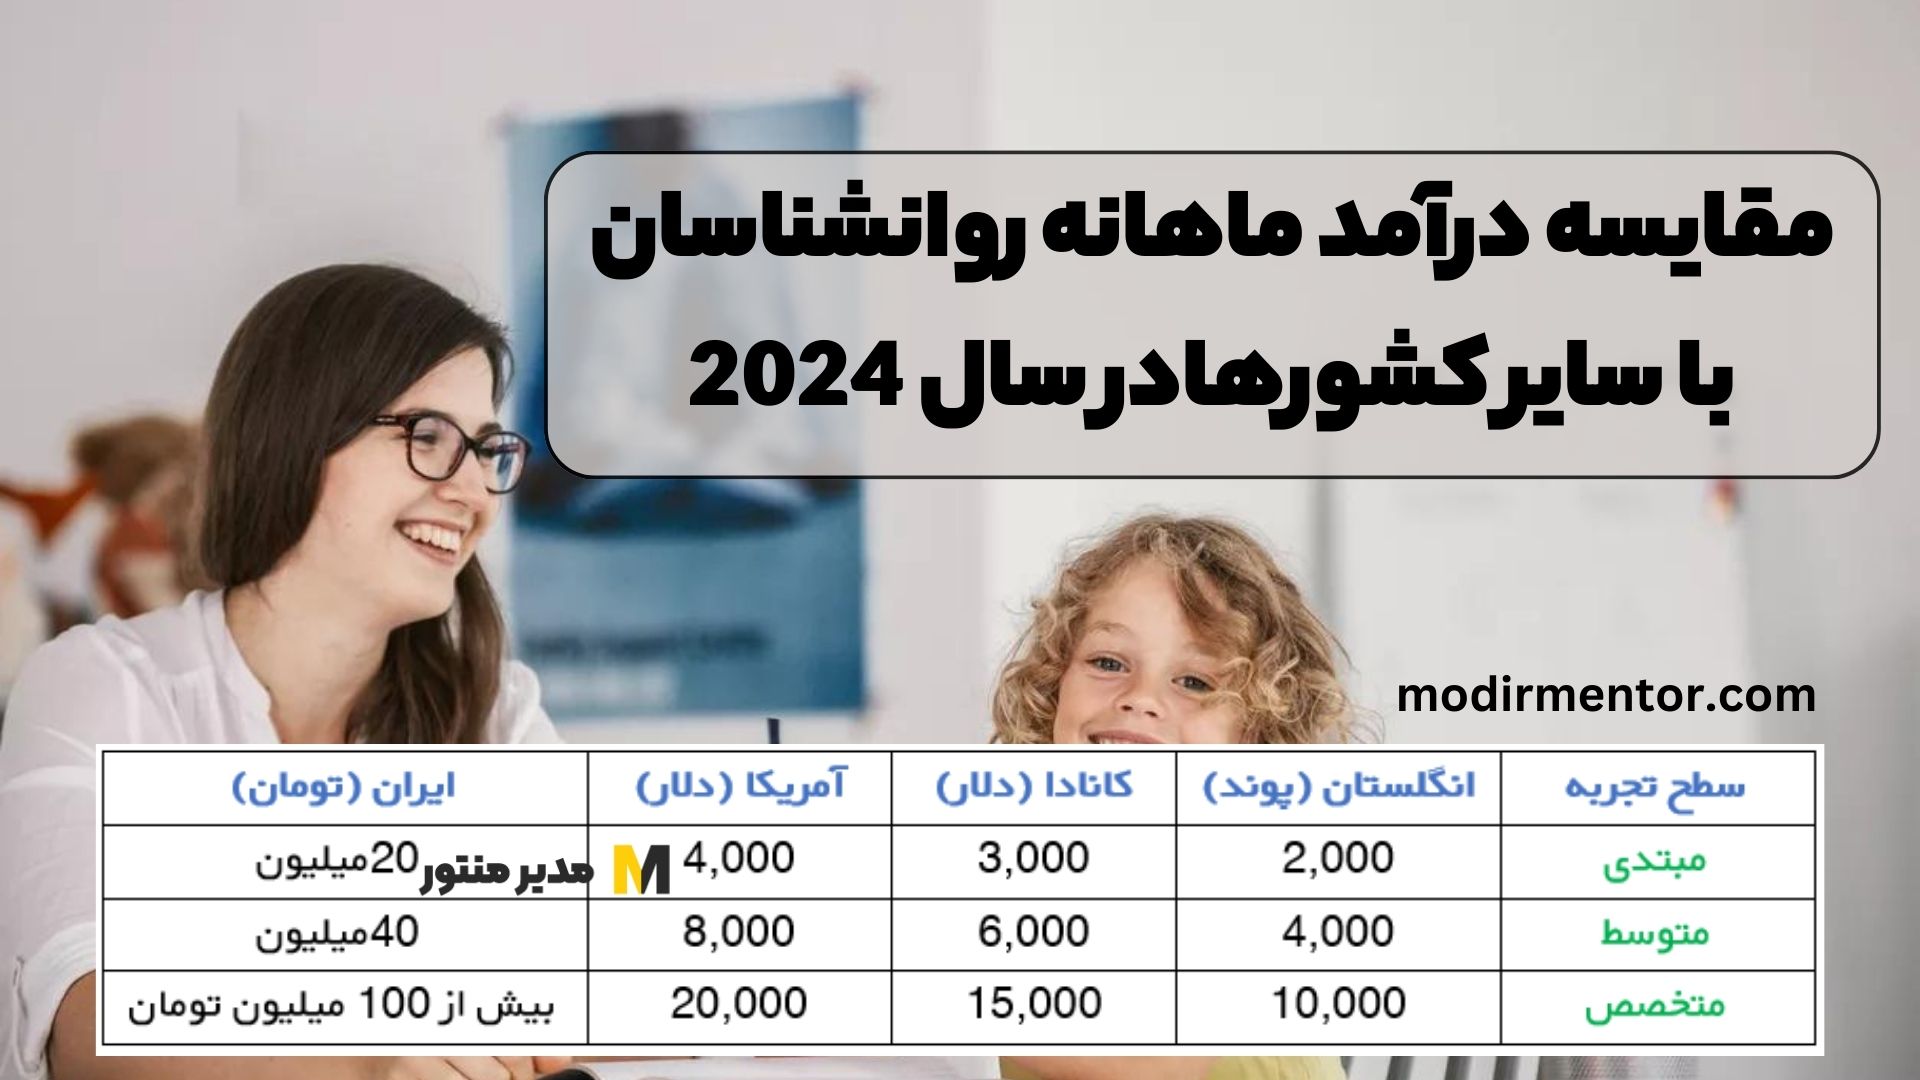 مقایسه درآمد ماهانه روانشناسان با سایر کشورها در سال 2024